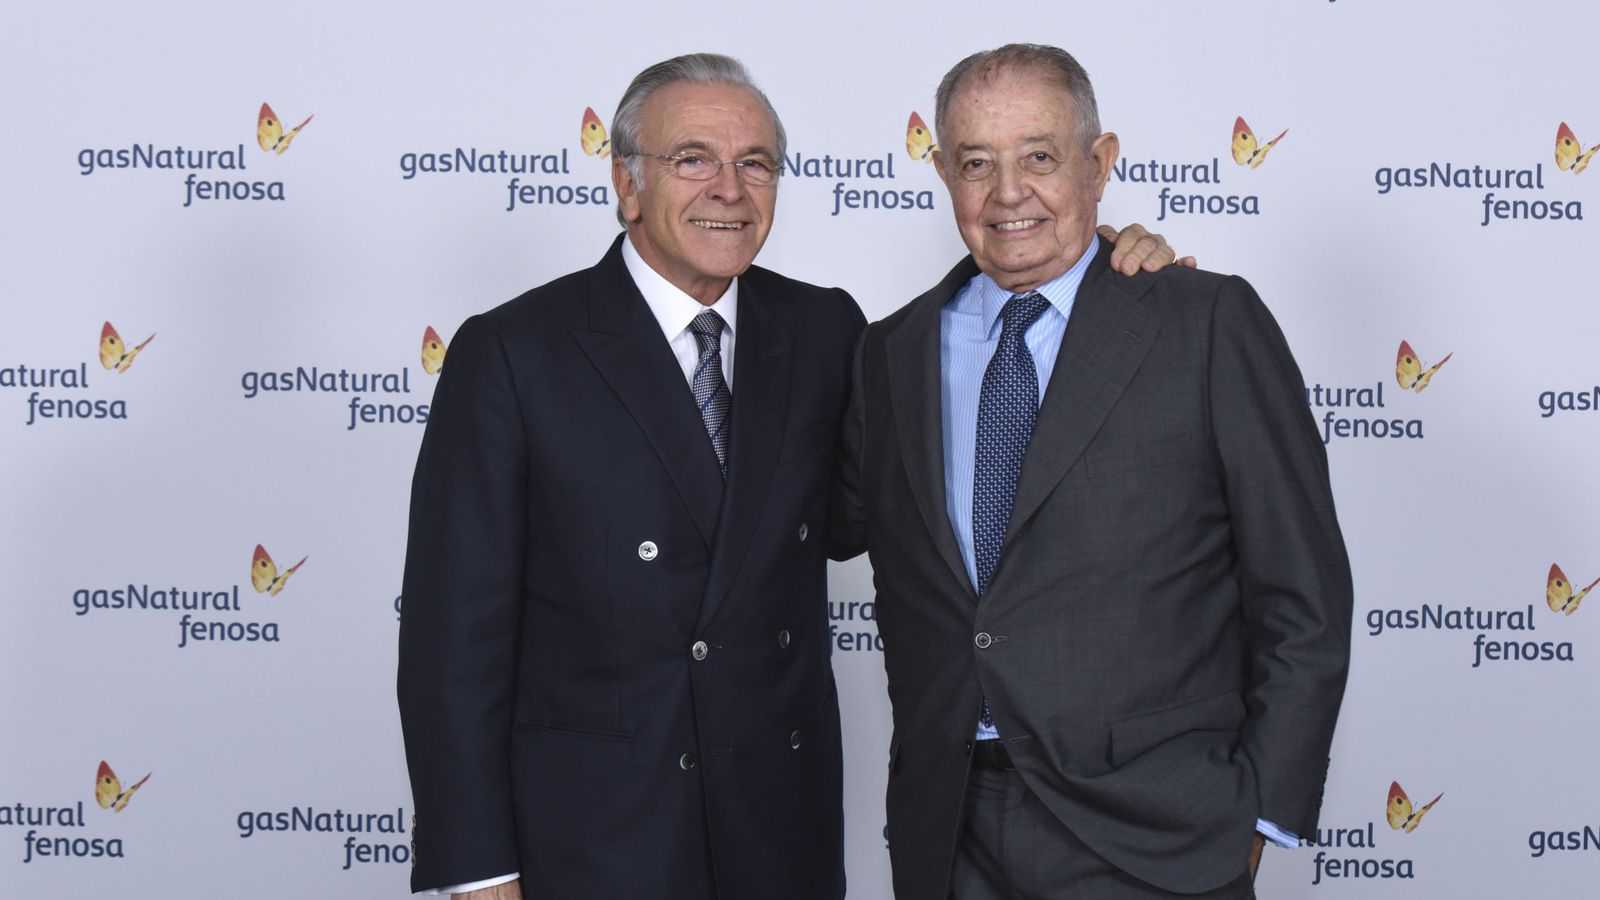 Foto: Fotografía facilitada por Gas Natural cuyo consejo de administración ha elegido hoy presidente a Isidro Fainé (i) en sustitución de Salvador Gabarró. (EFE)